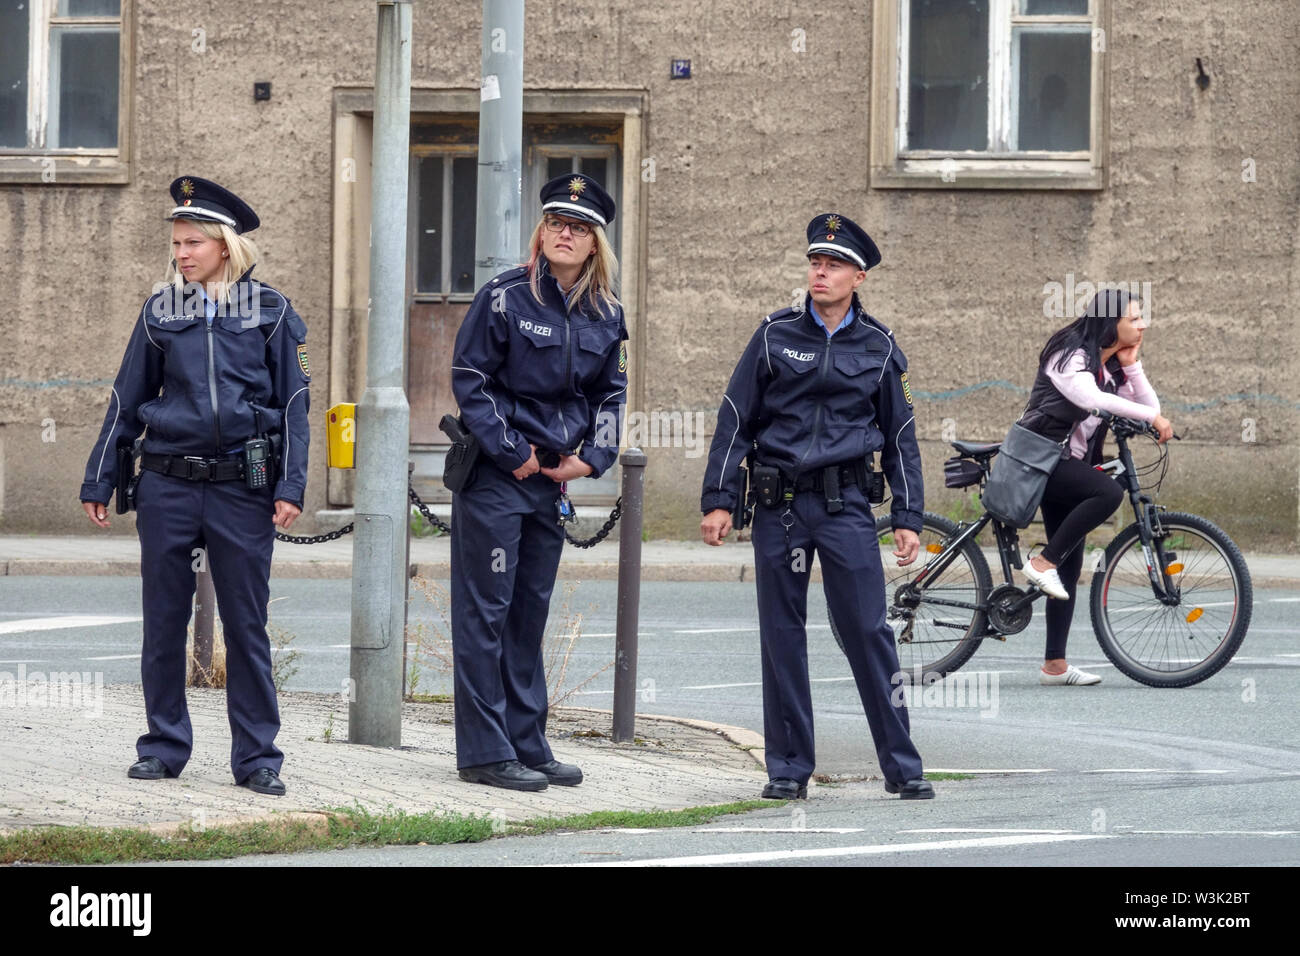 Trois policiers dans la rue, la police allemande Banque D'Images